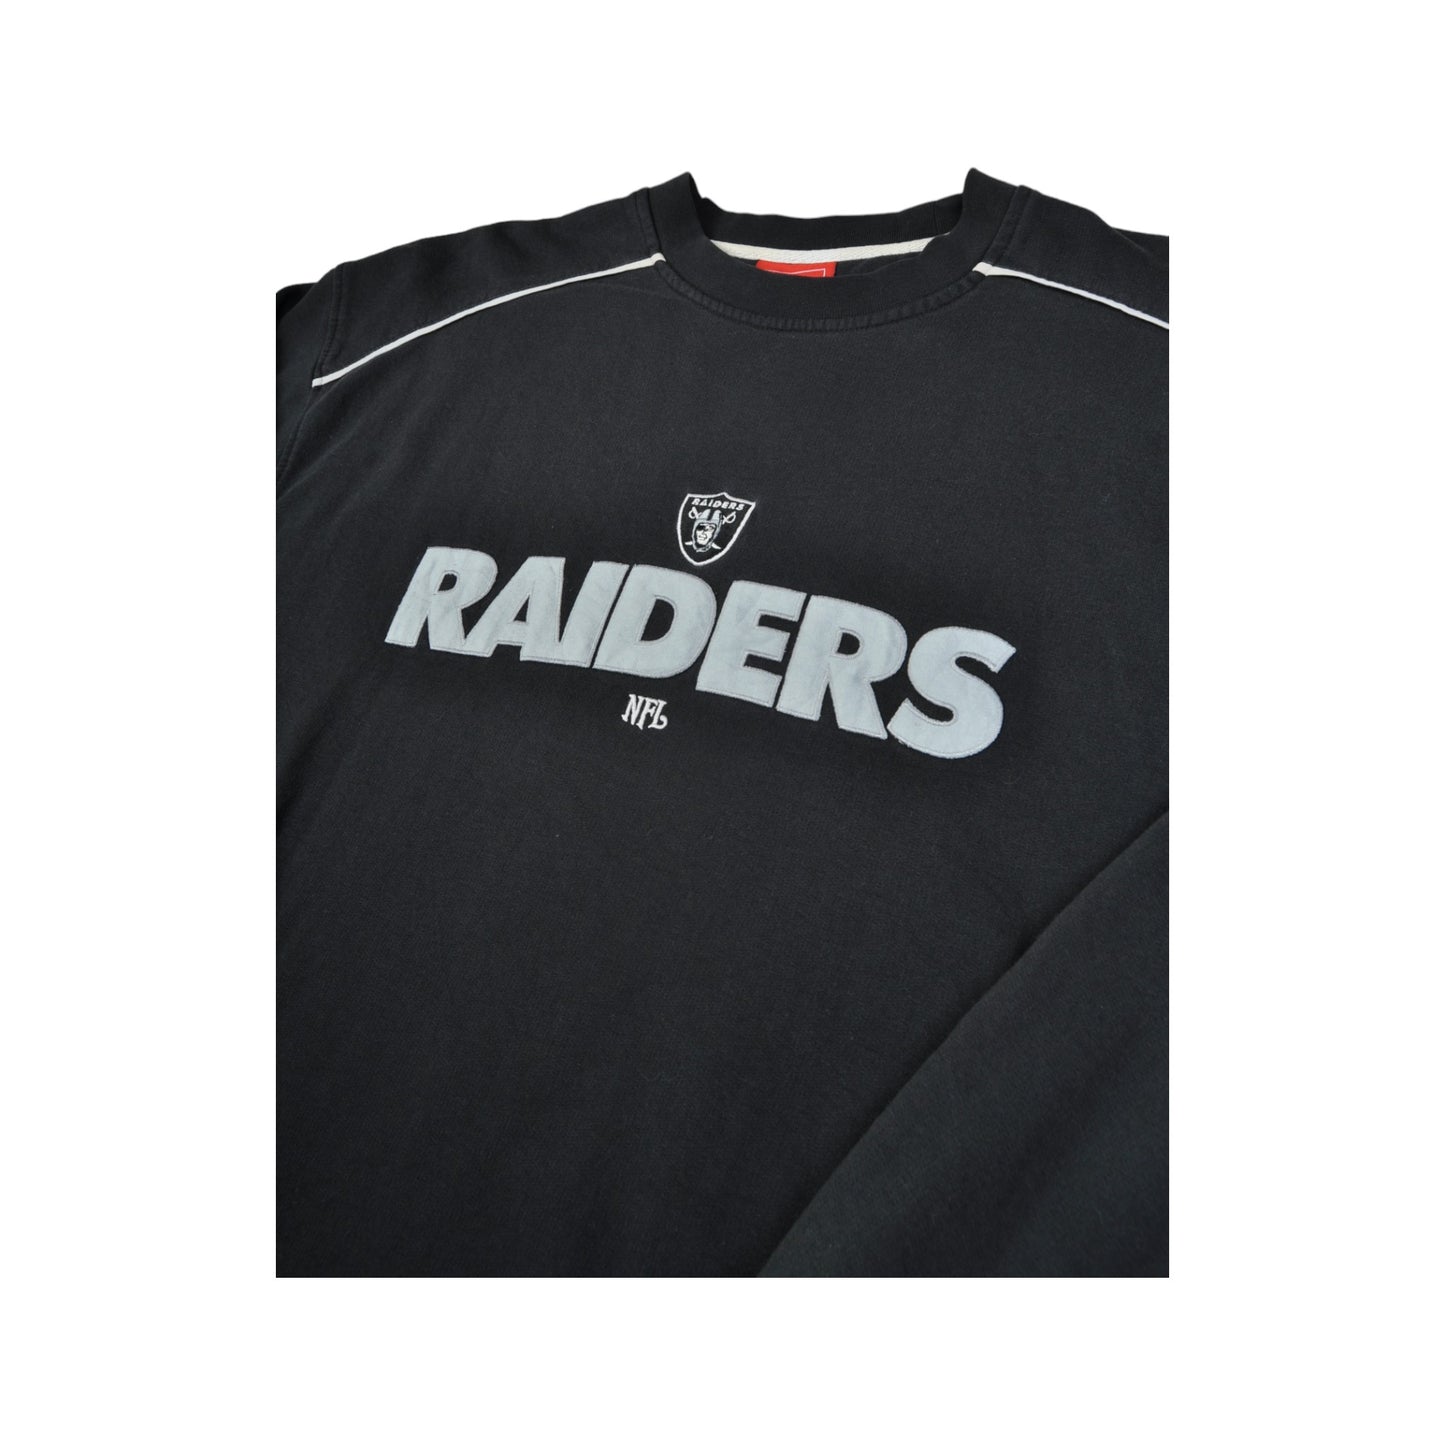 Vintage NFL Raiders Sweater Black XL